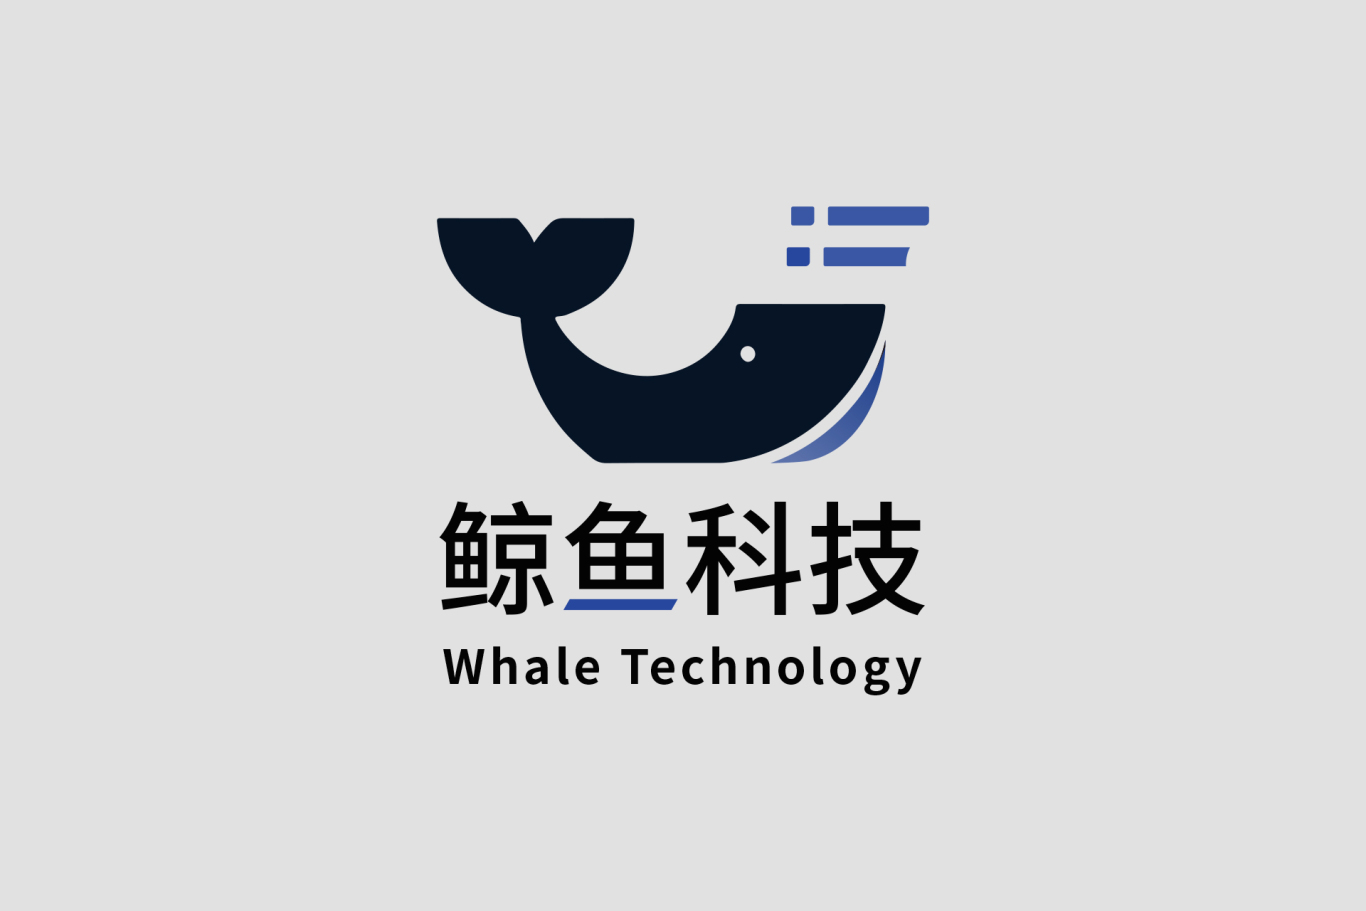 鲸鱼科技智能家居设备品牌标识设计图0